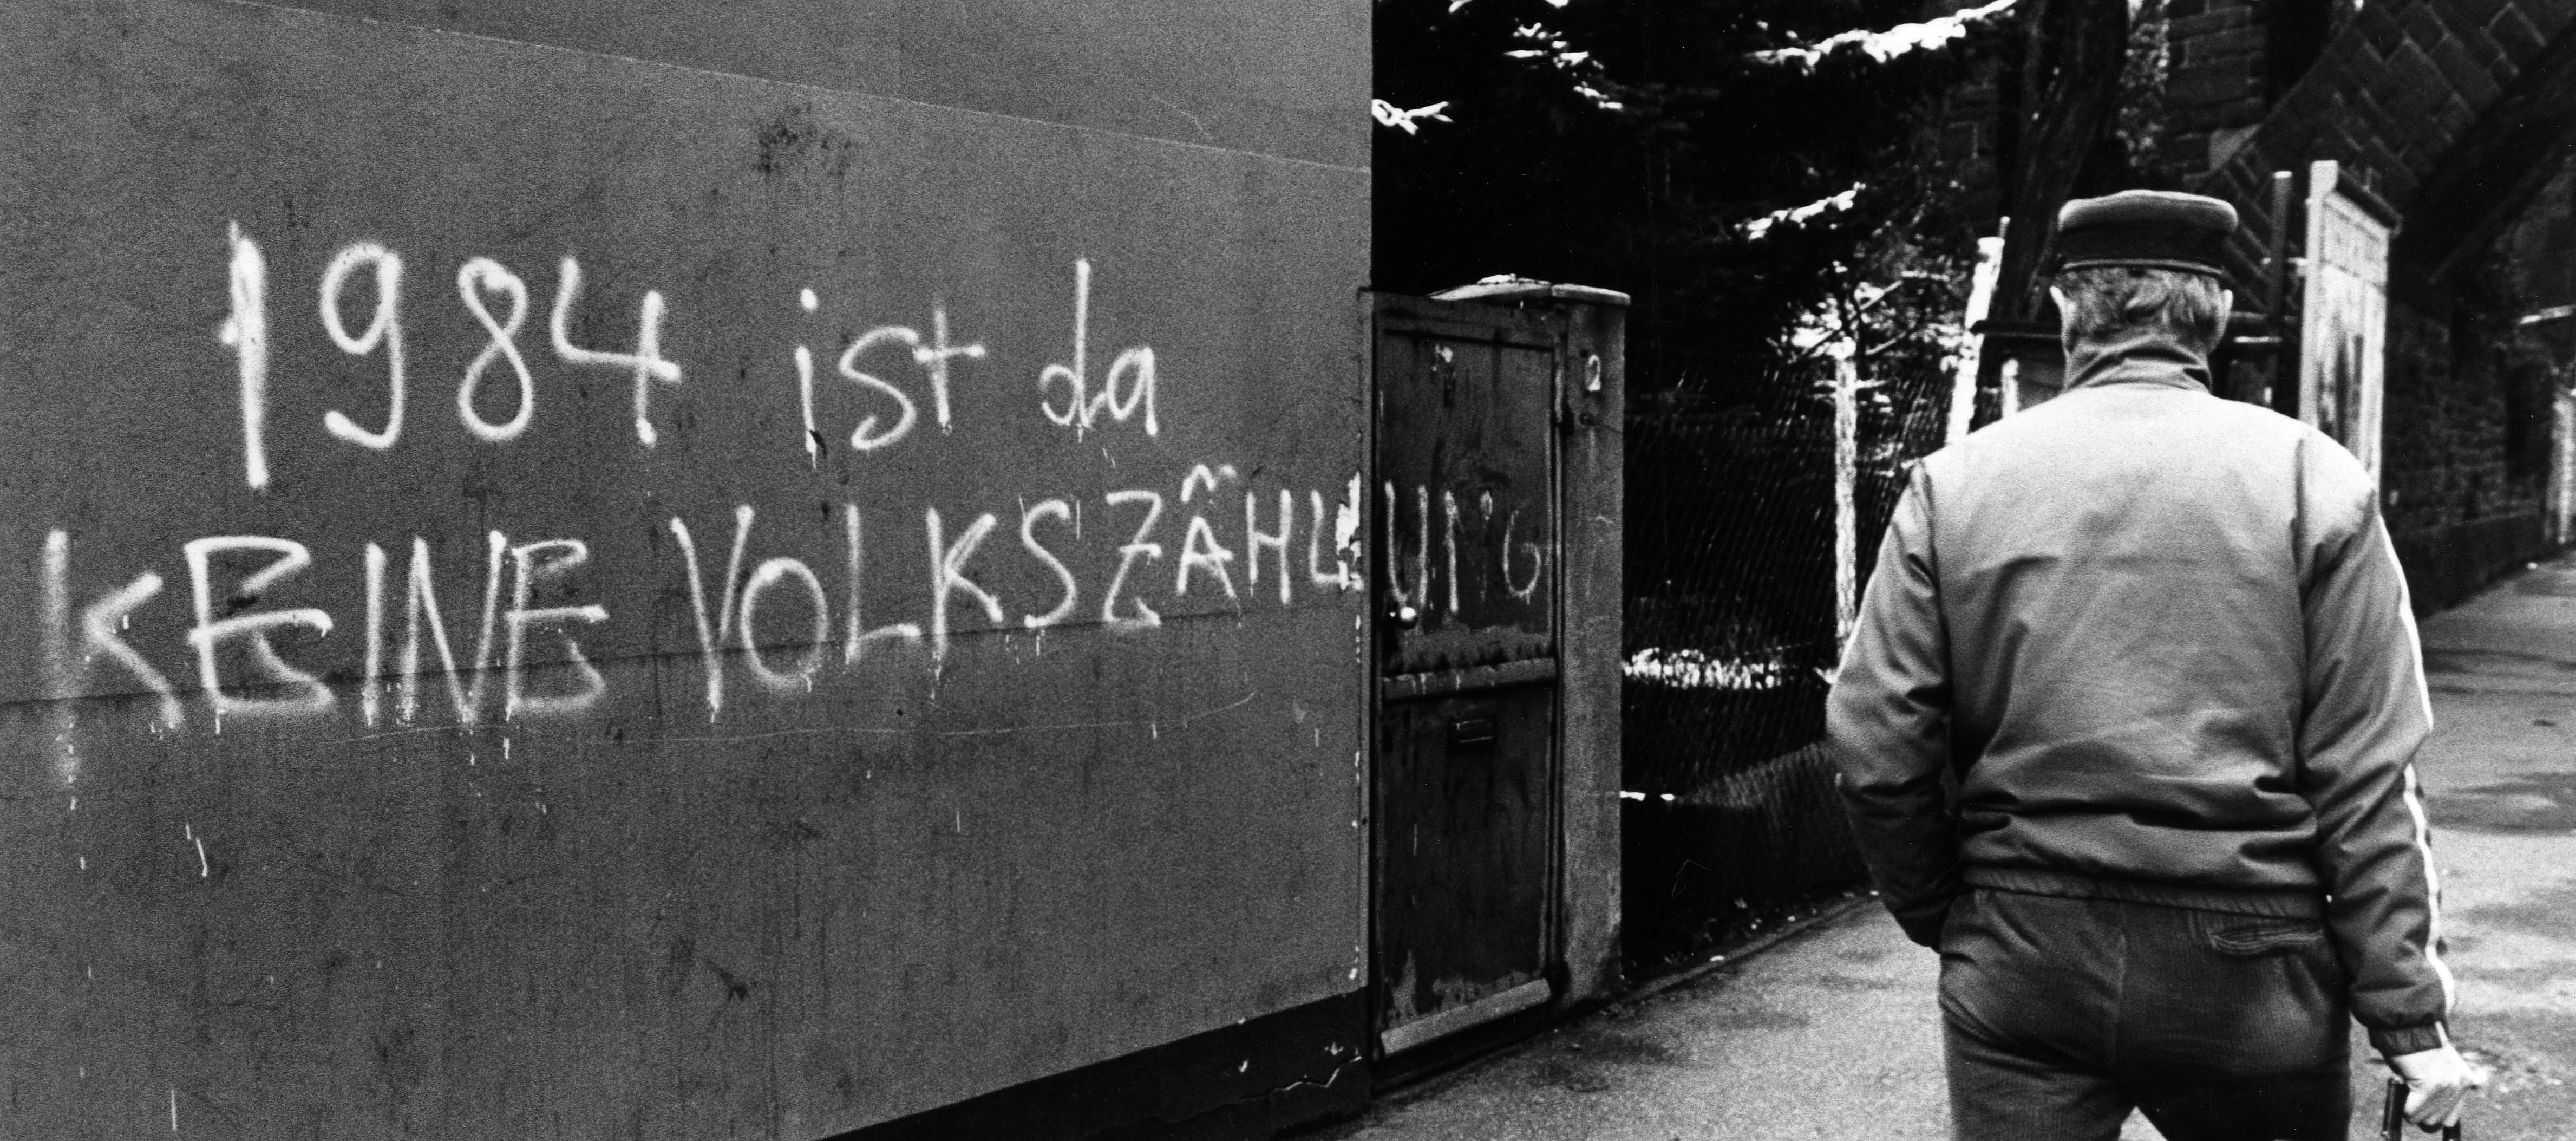 Mauer mit Graffito in Köln: "1984 ist da KEINE VOLKSZÄHLUNG", Fotografie von J.H. Darchinger aus dem Jahr 1987, Quelle: AdsD 6/FJHD00498, Rechte: J.H. Darchinger / Friedrich-Ebert-Stiftung 